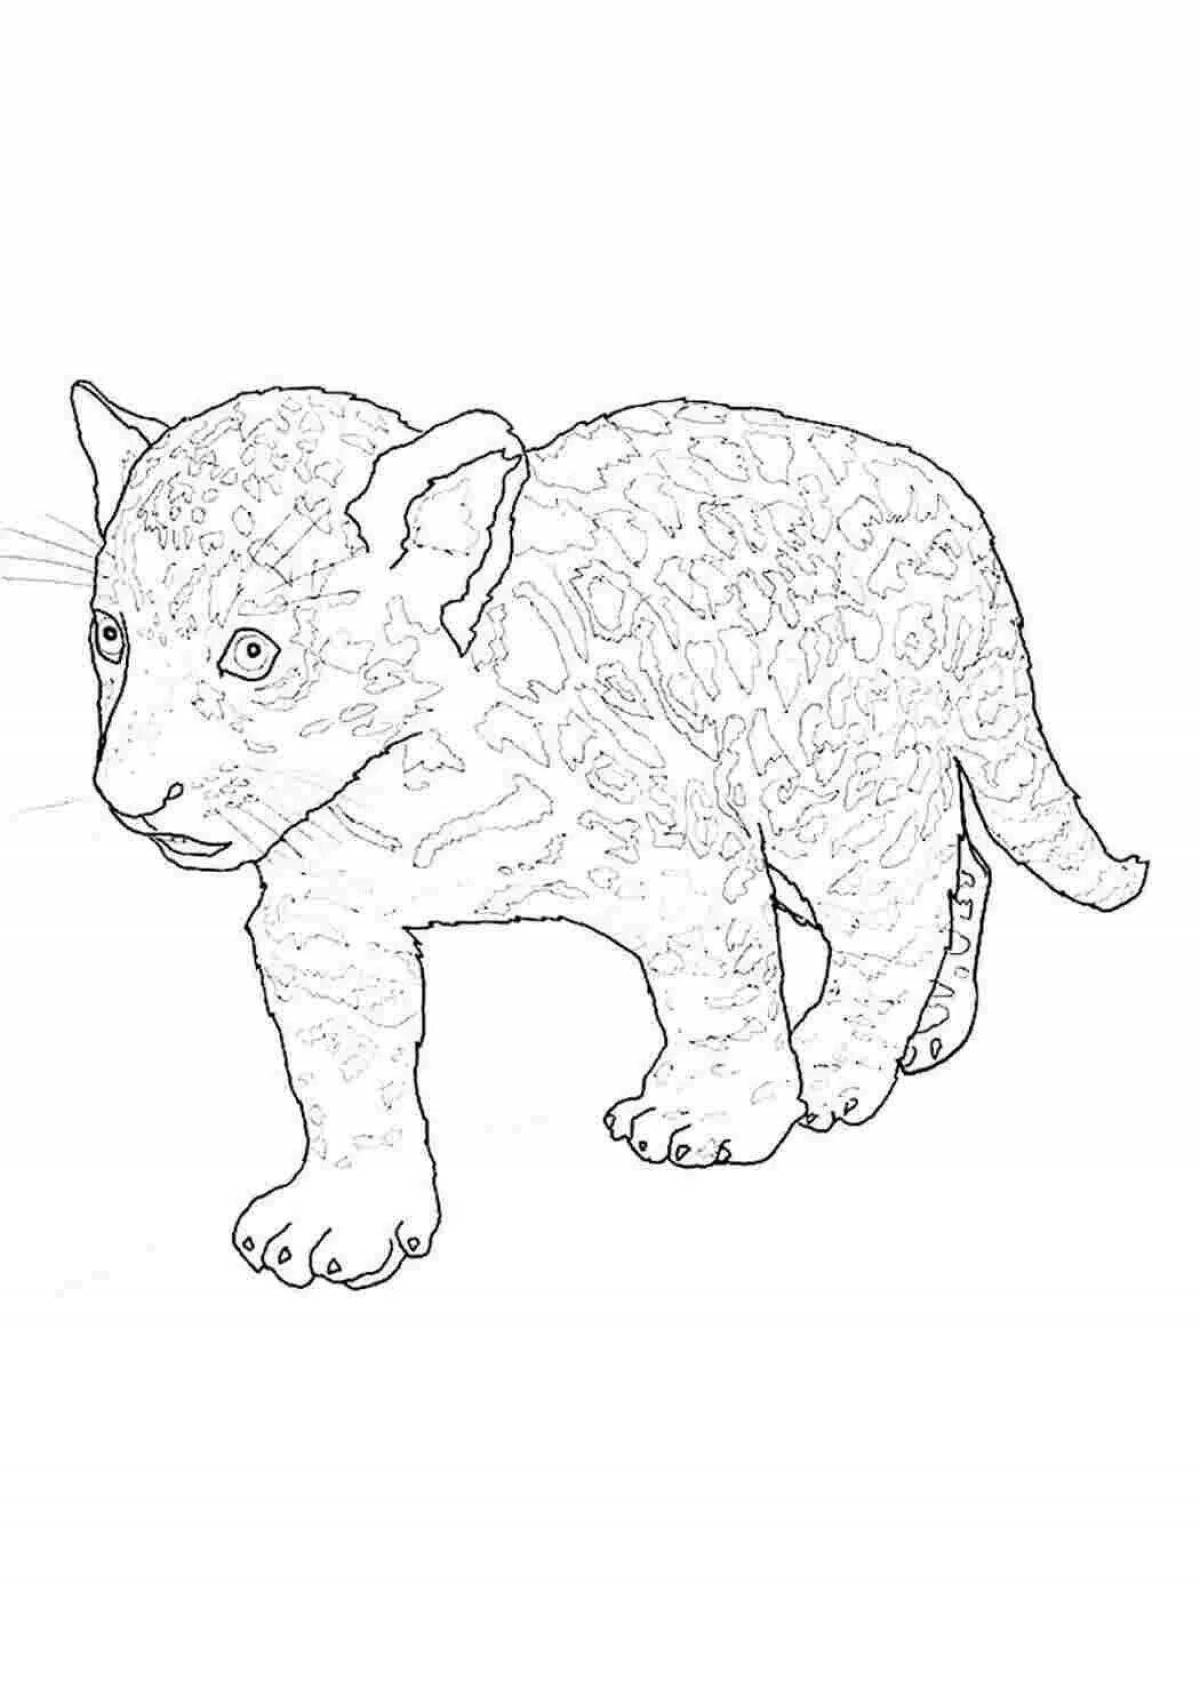 Charming jaguar coloring page